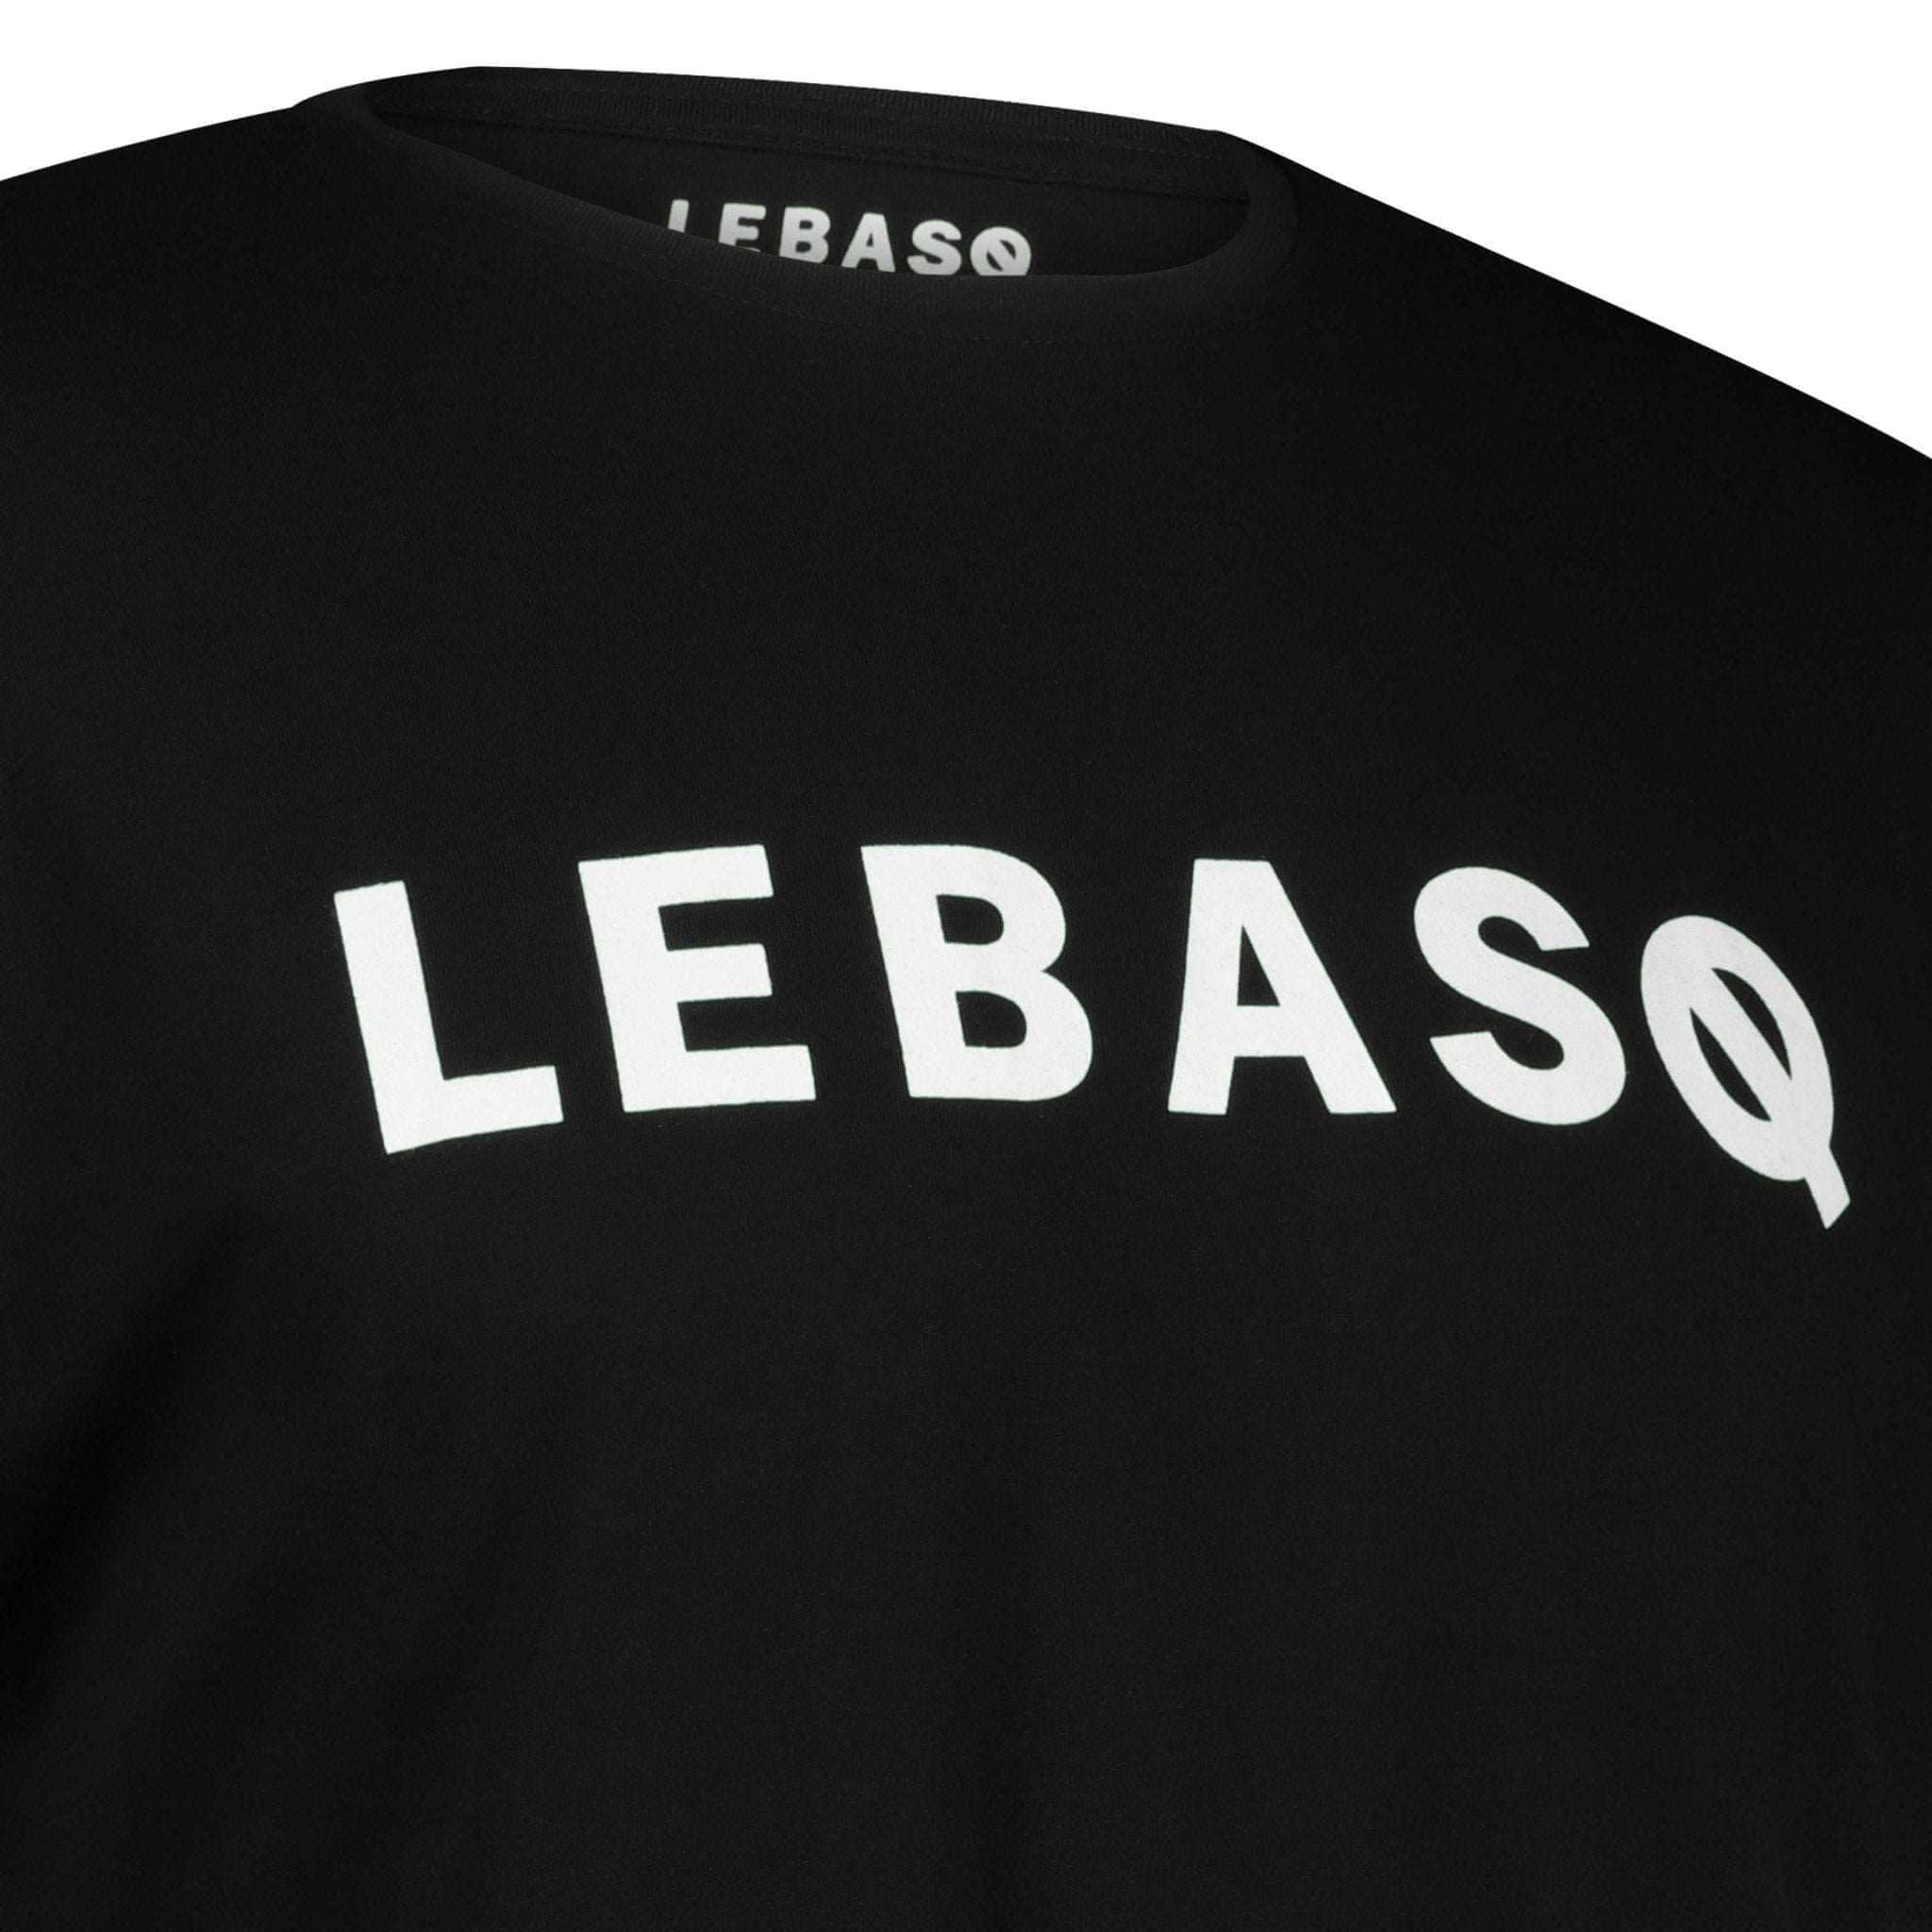 LEBASQ's Crew Neck T-Shirt Black - LebasQ